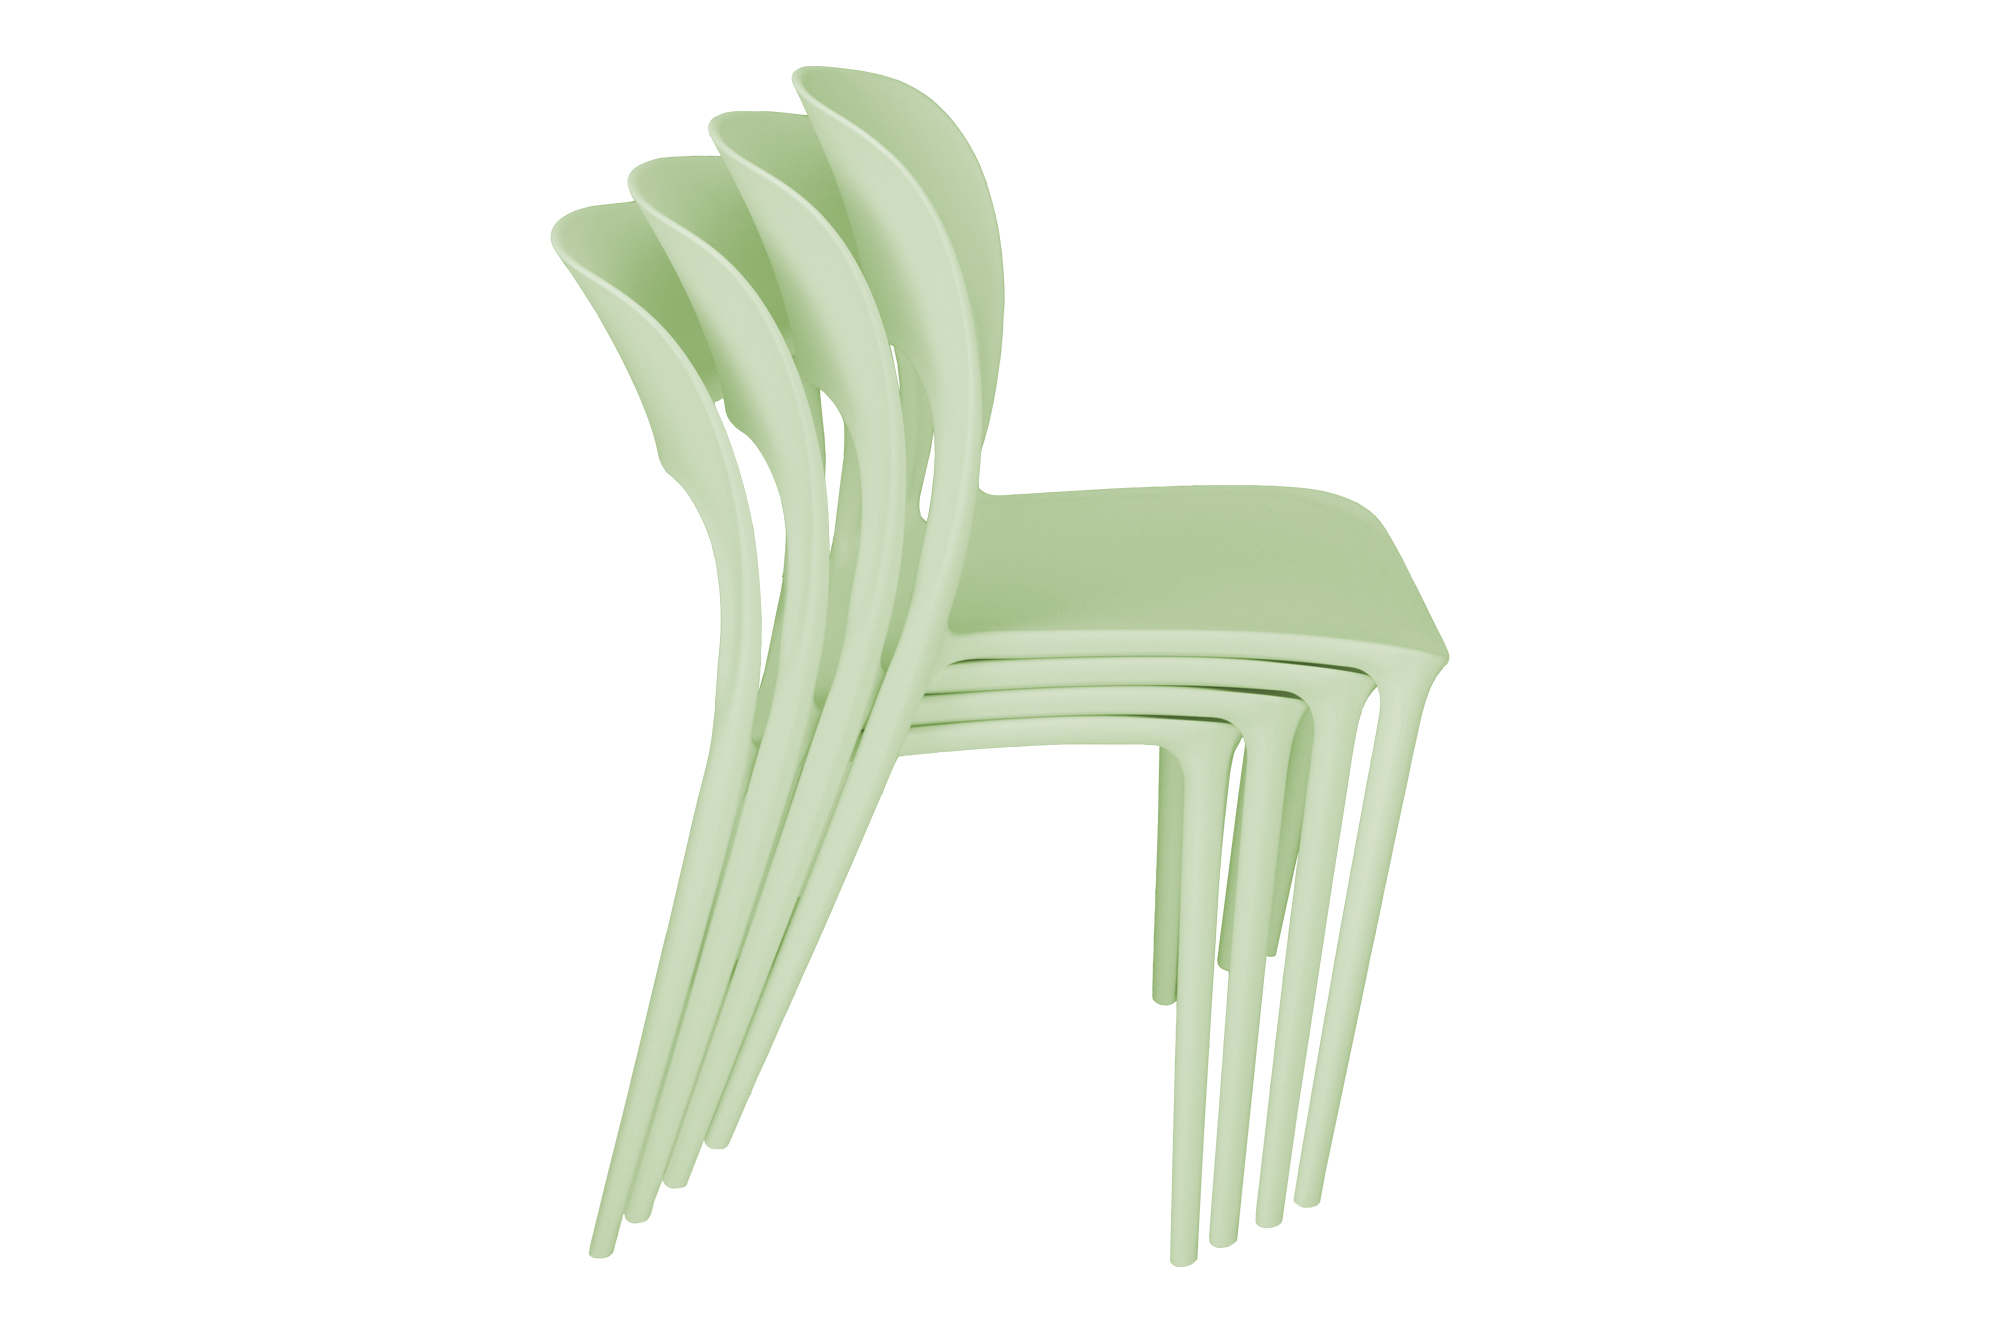 Sedia impilabile in polipropilene verde salvia mod. Maya – Samira Italia